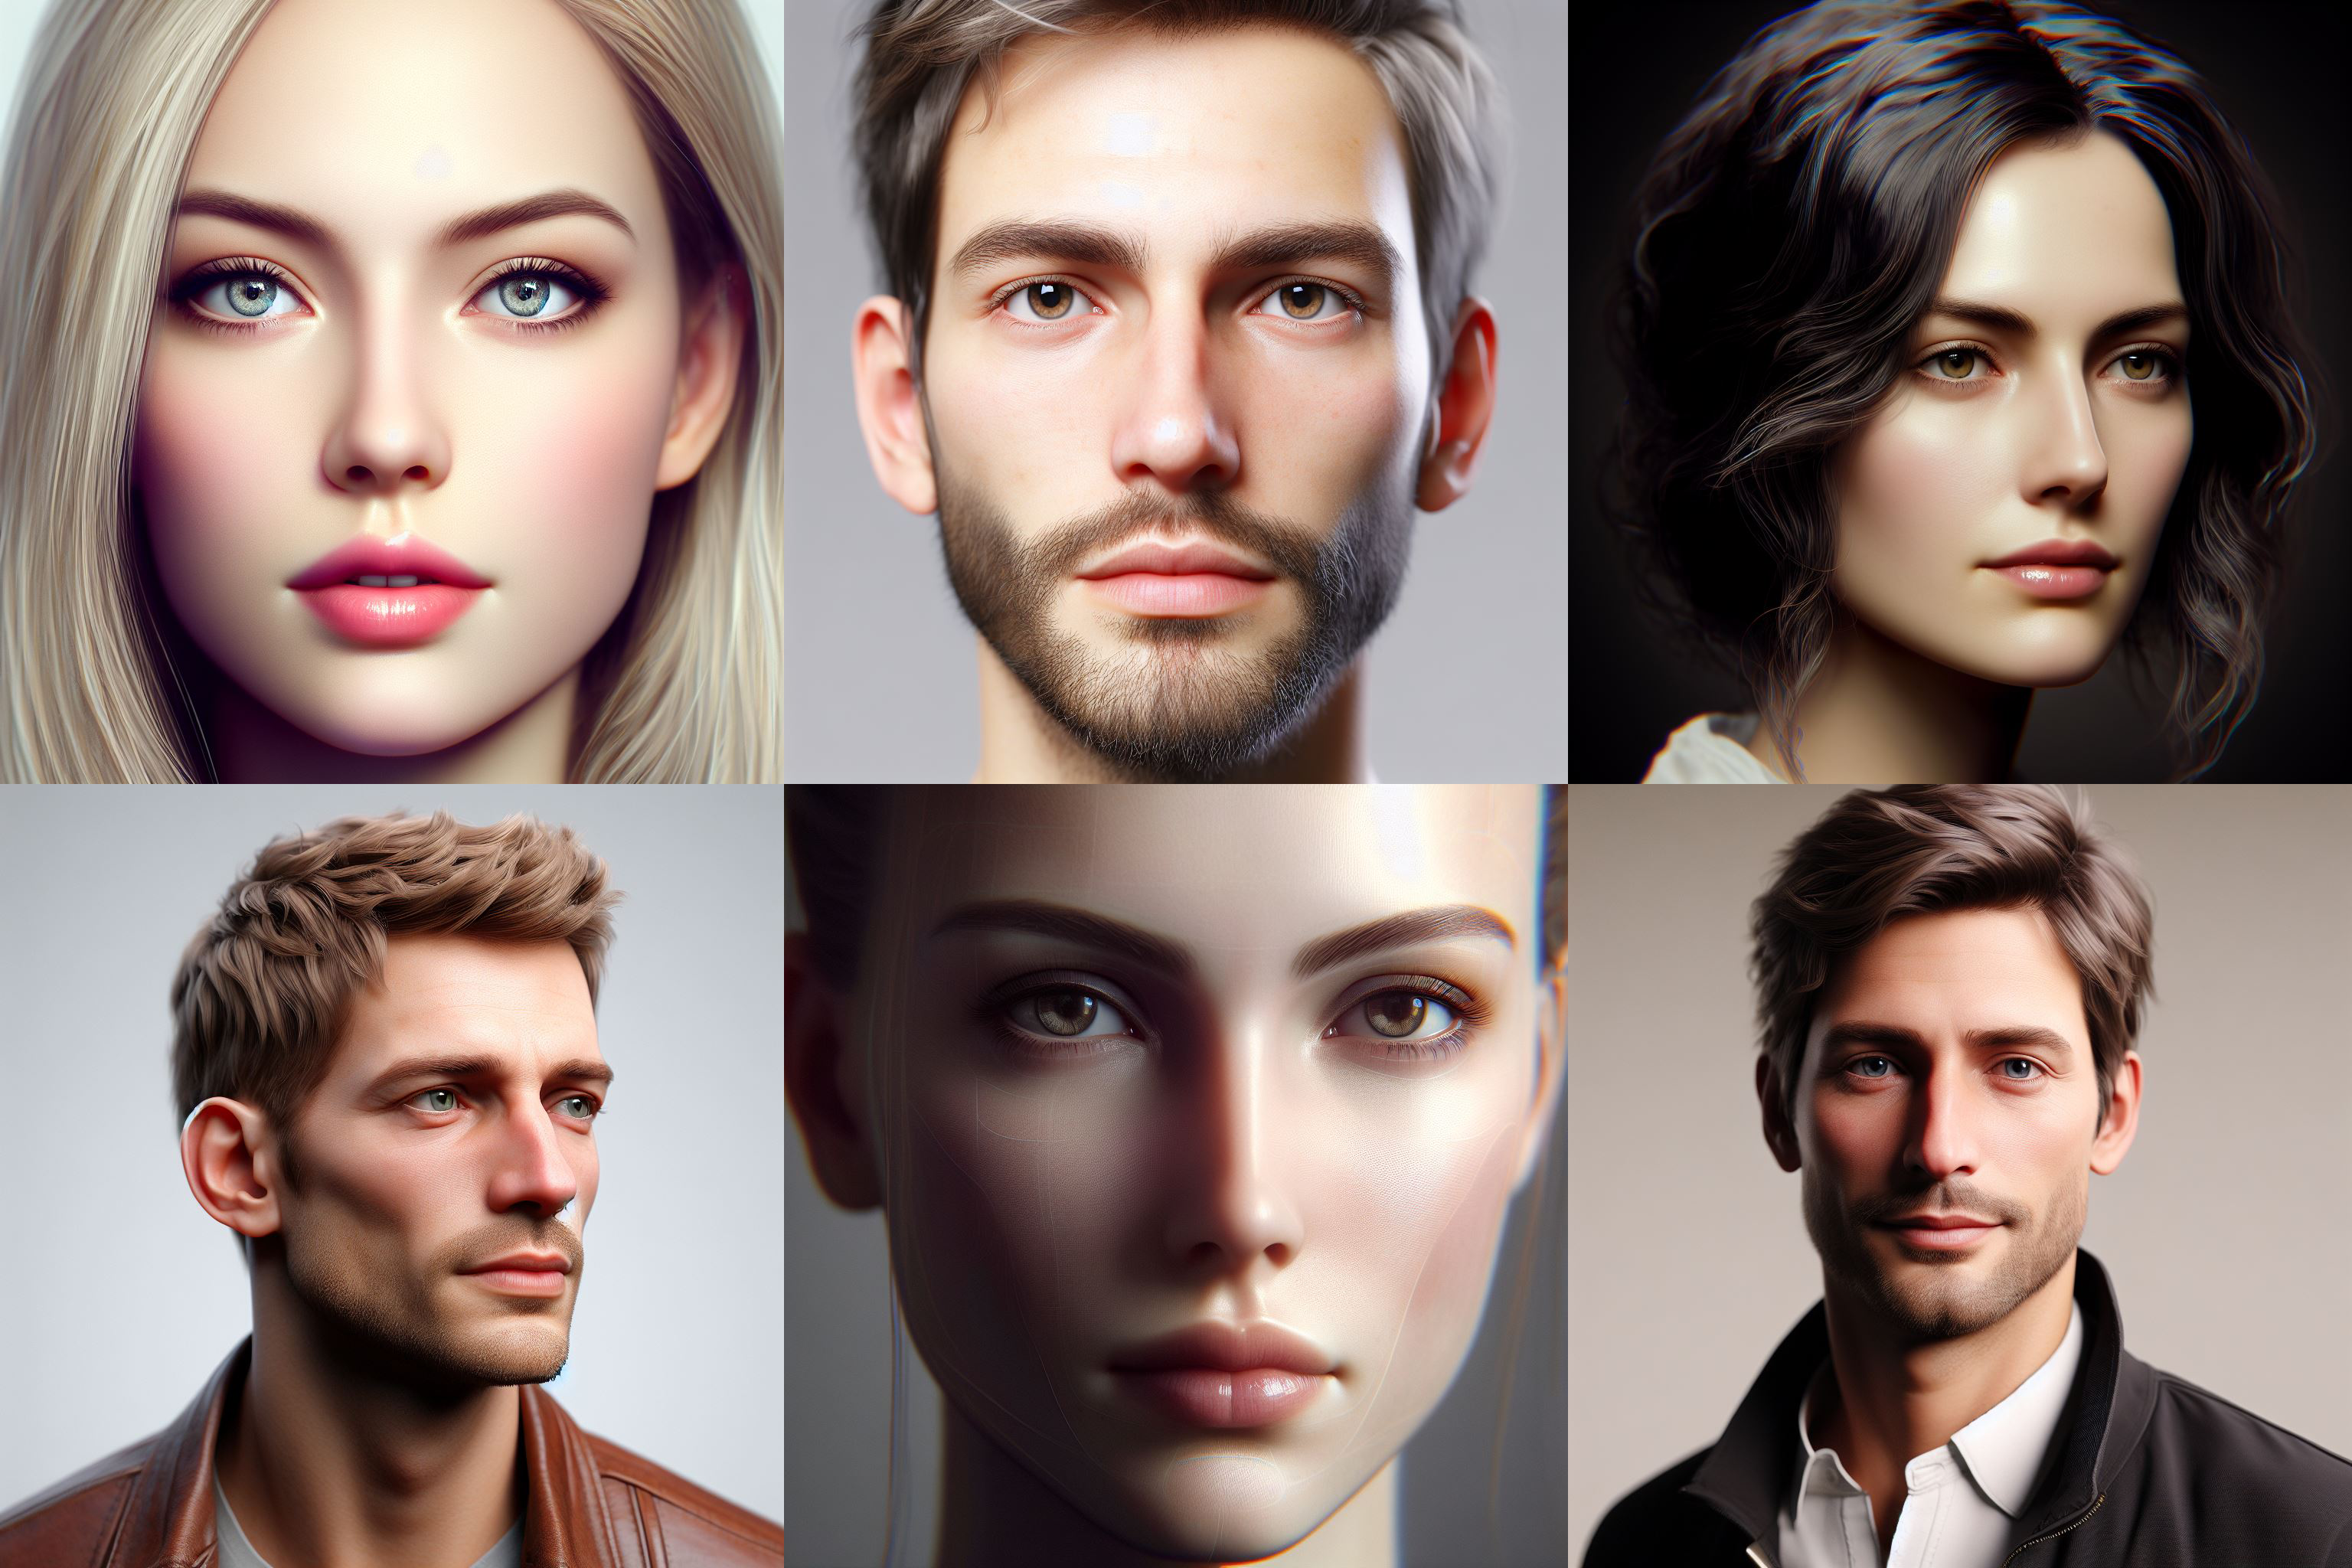 Ludzie są bardziej skłonni ufać białym twarzom na wygenerowanych zdjęciach niż na prawdziwych fotografiach - badanie